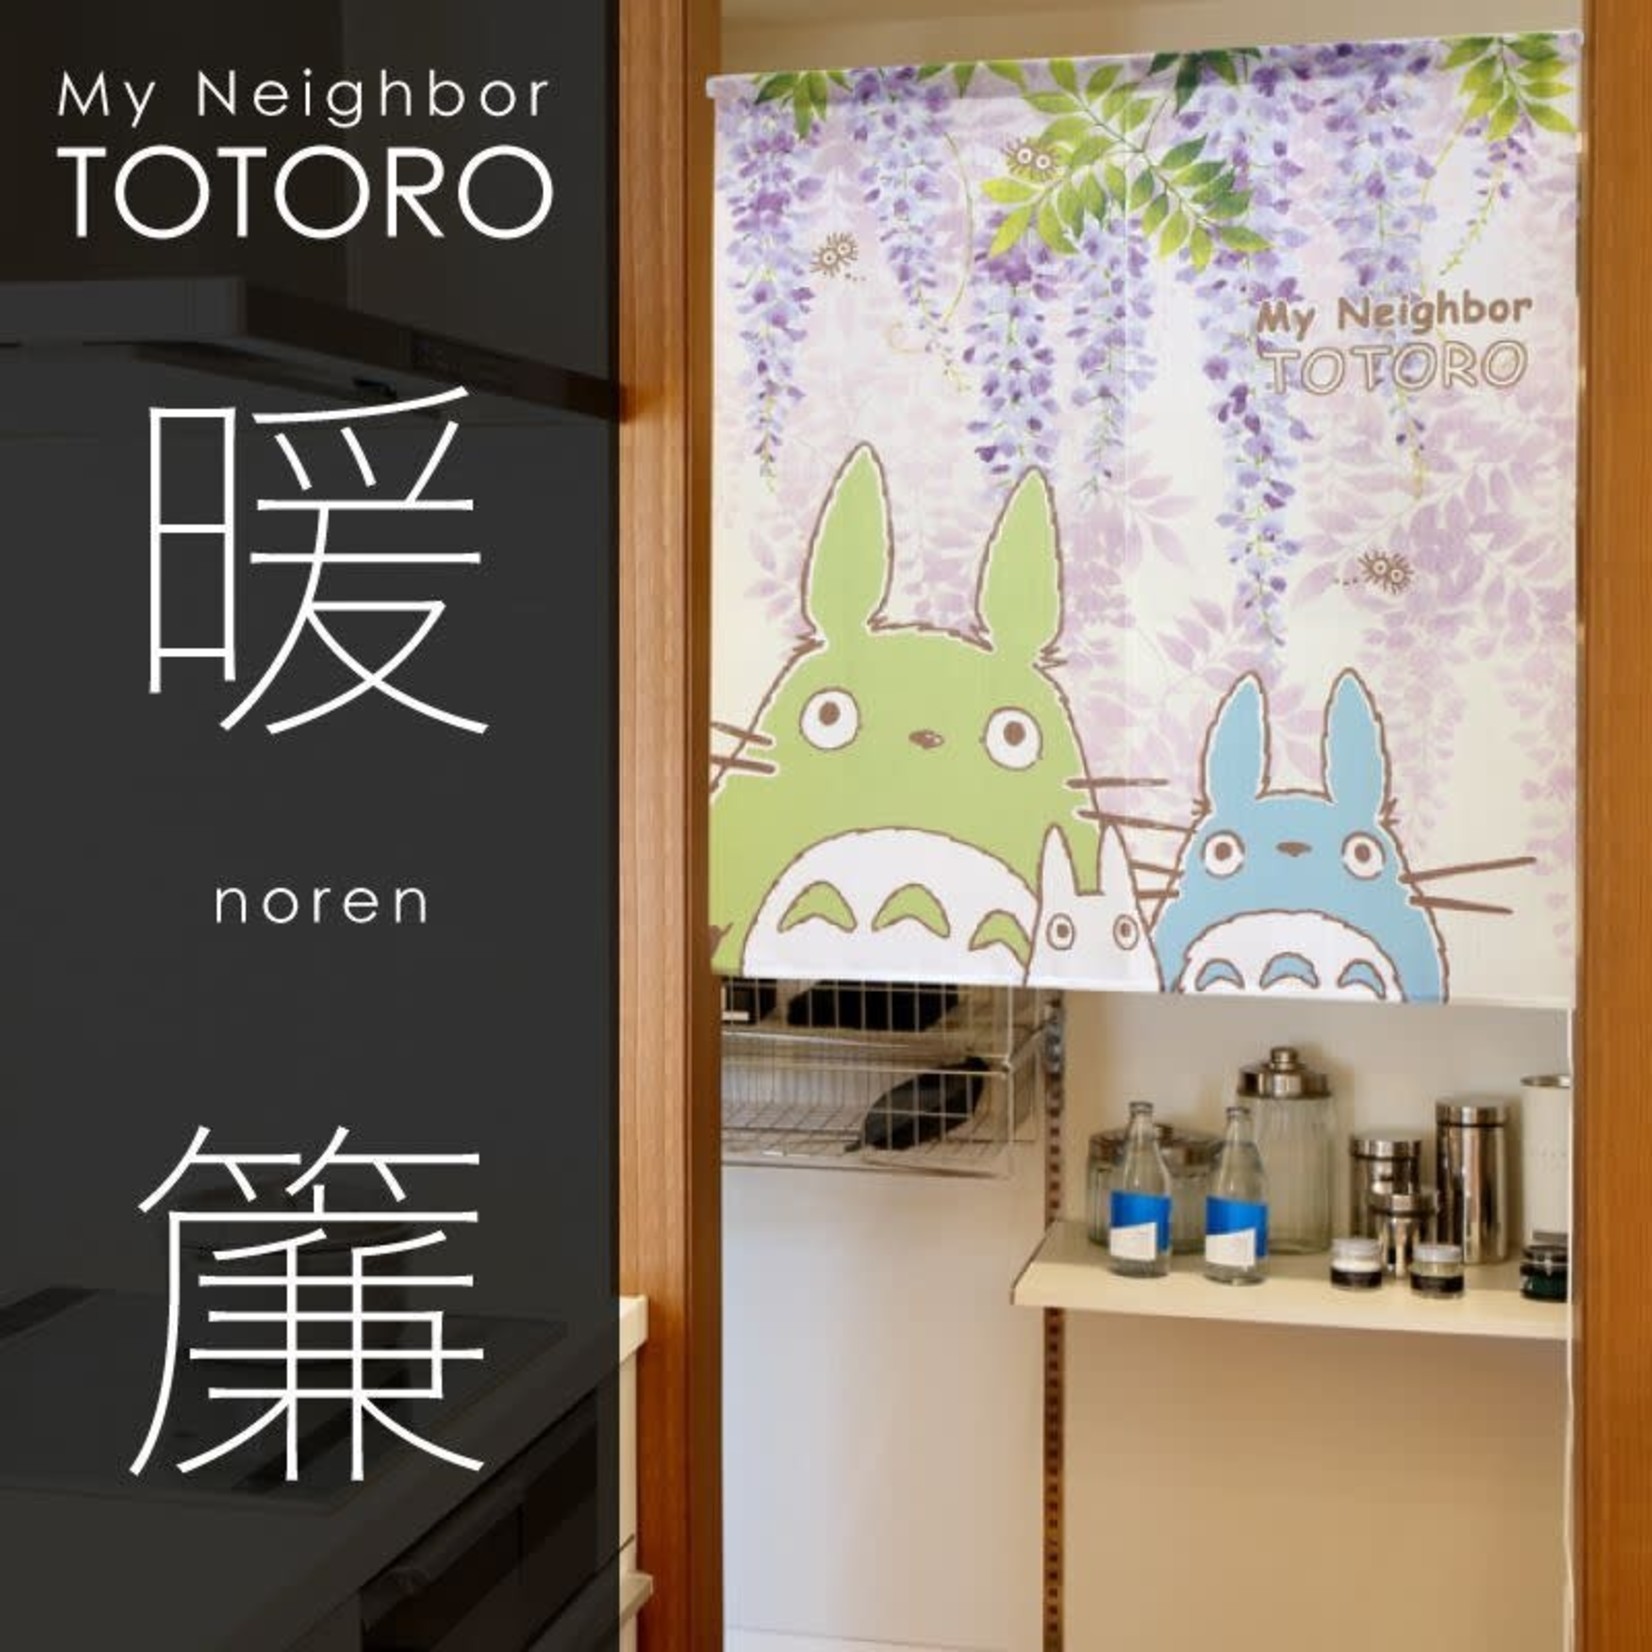 Noren - Totoro - "Fuji Totoro" 11275